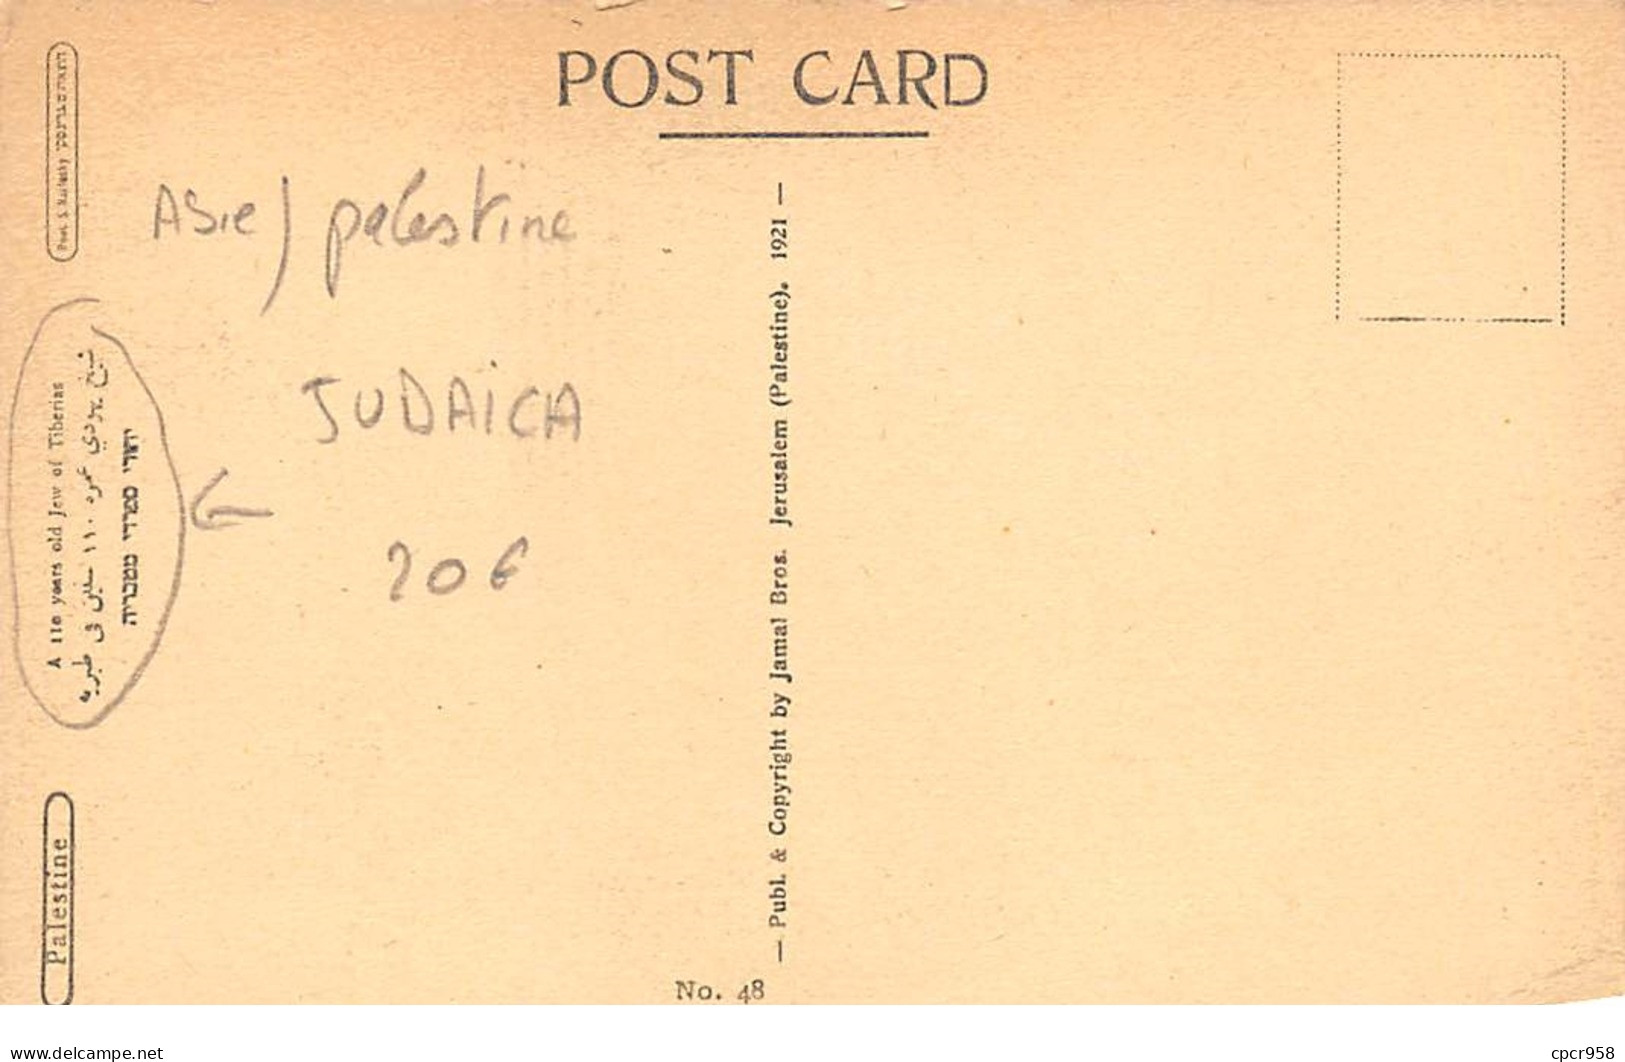 Asie - N°64820 - Palestine - Judaica - A .. Years Old Jew Of Tiberias - Palestina